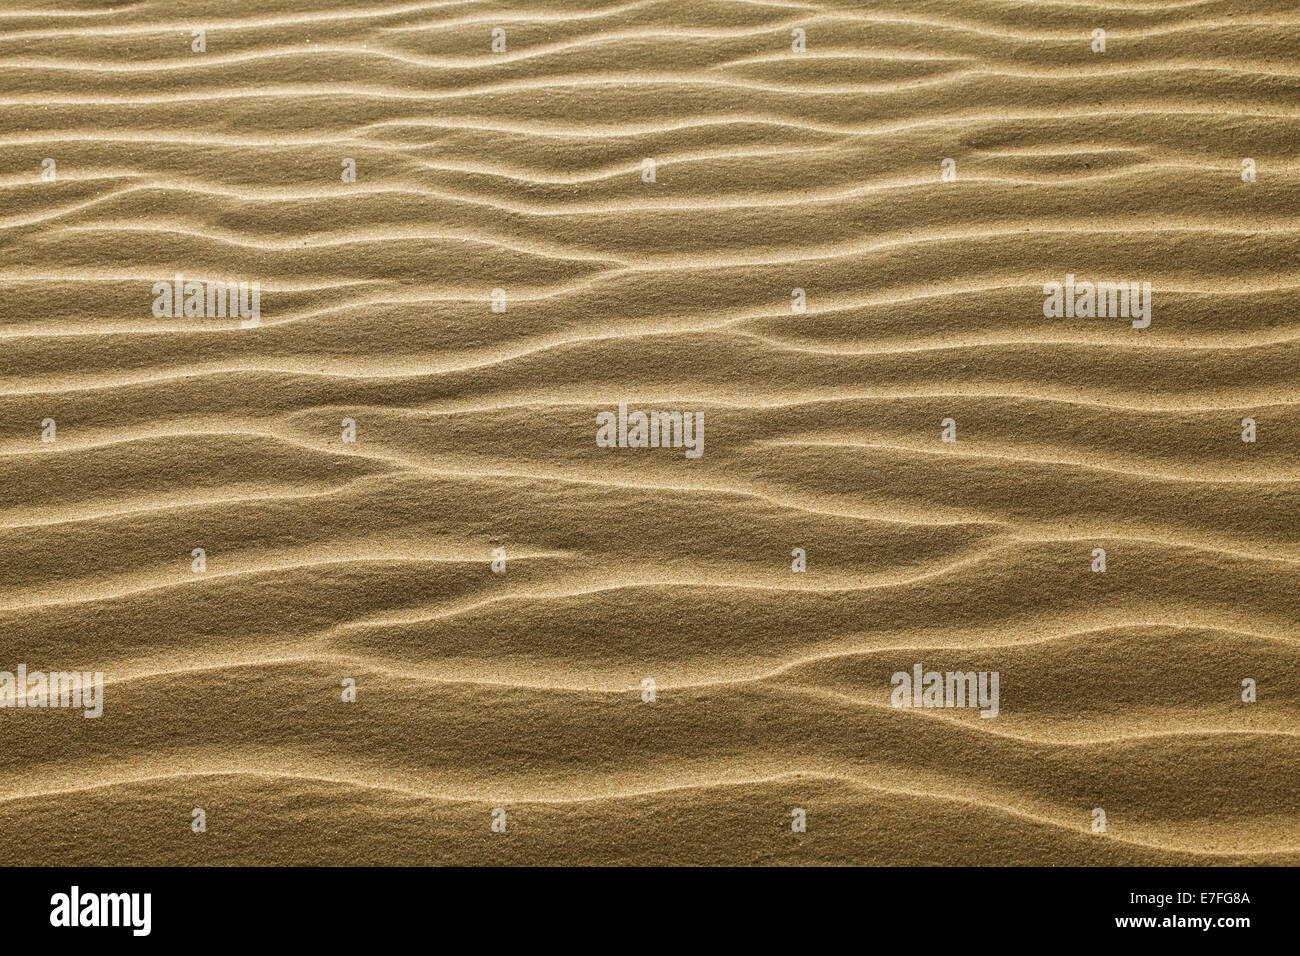 Textur der Sand vom Winde verweht gewellt Stockfoto